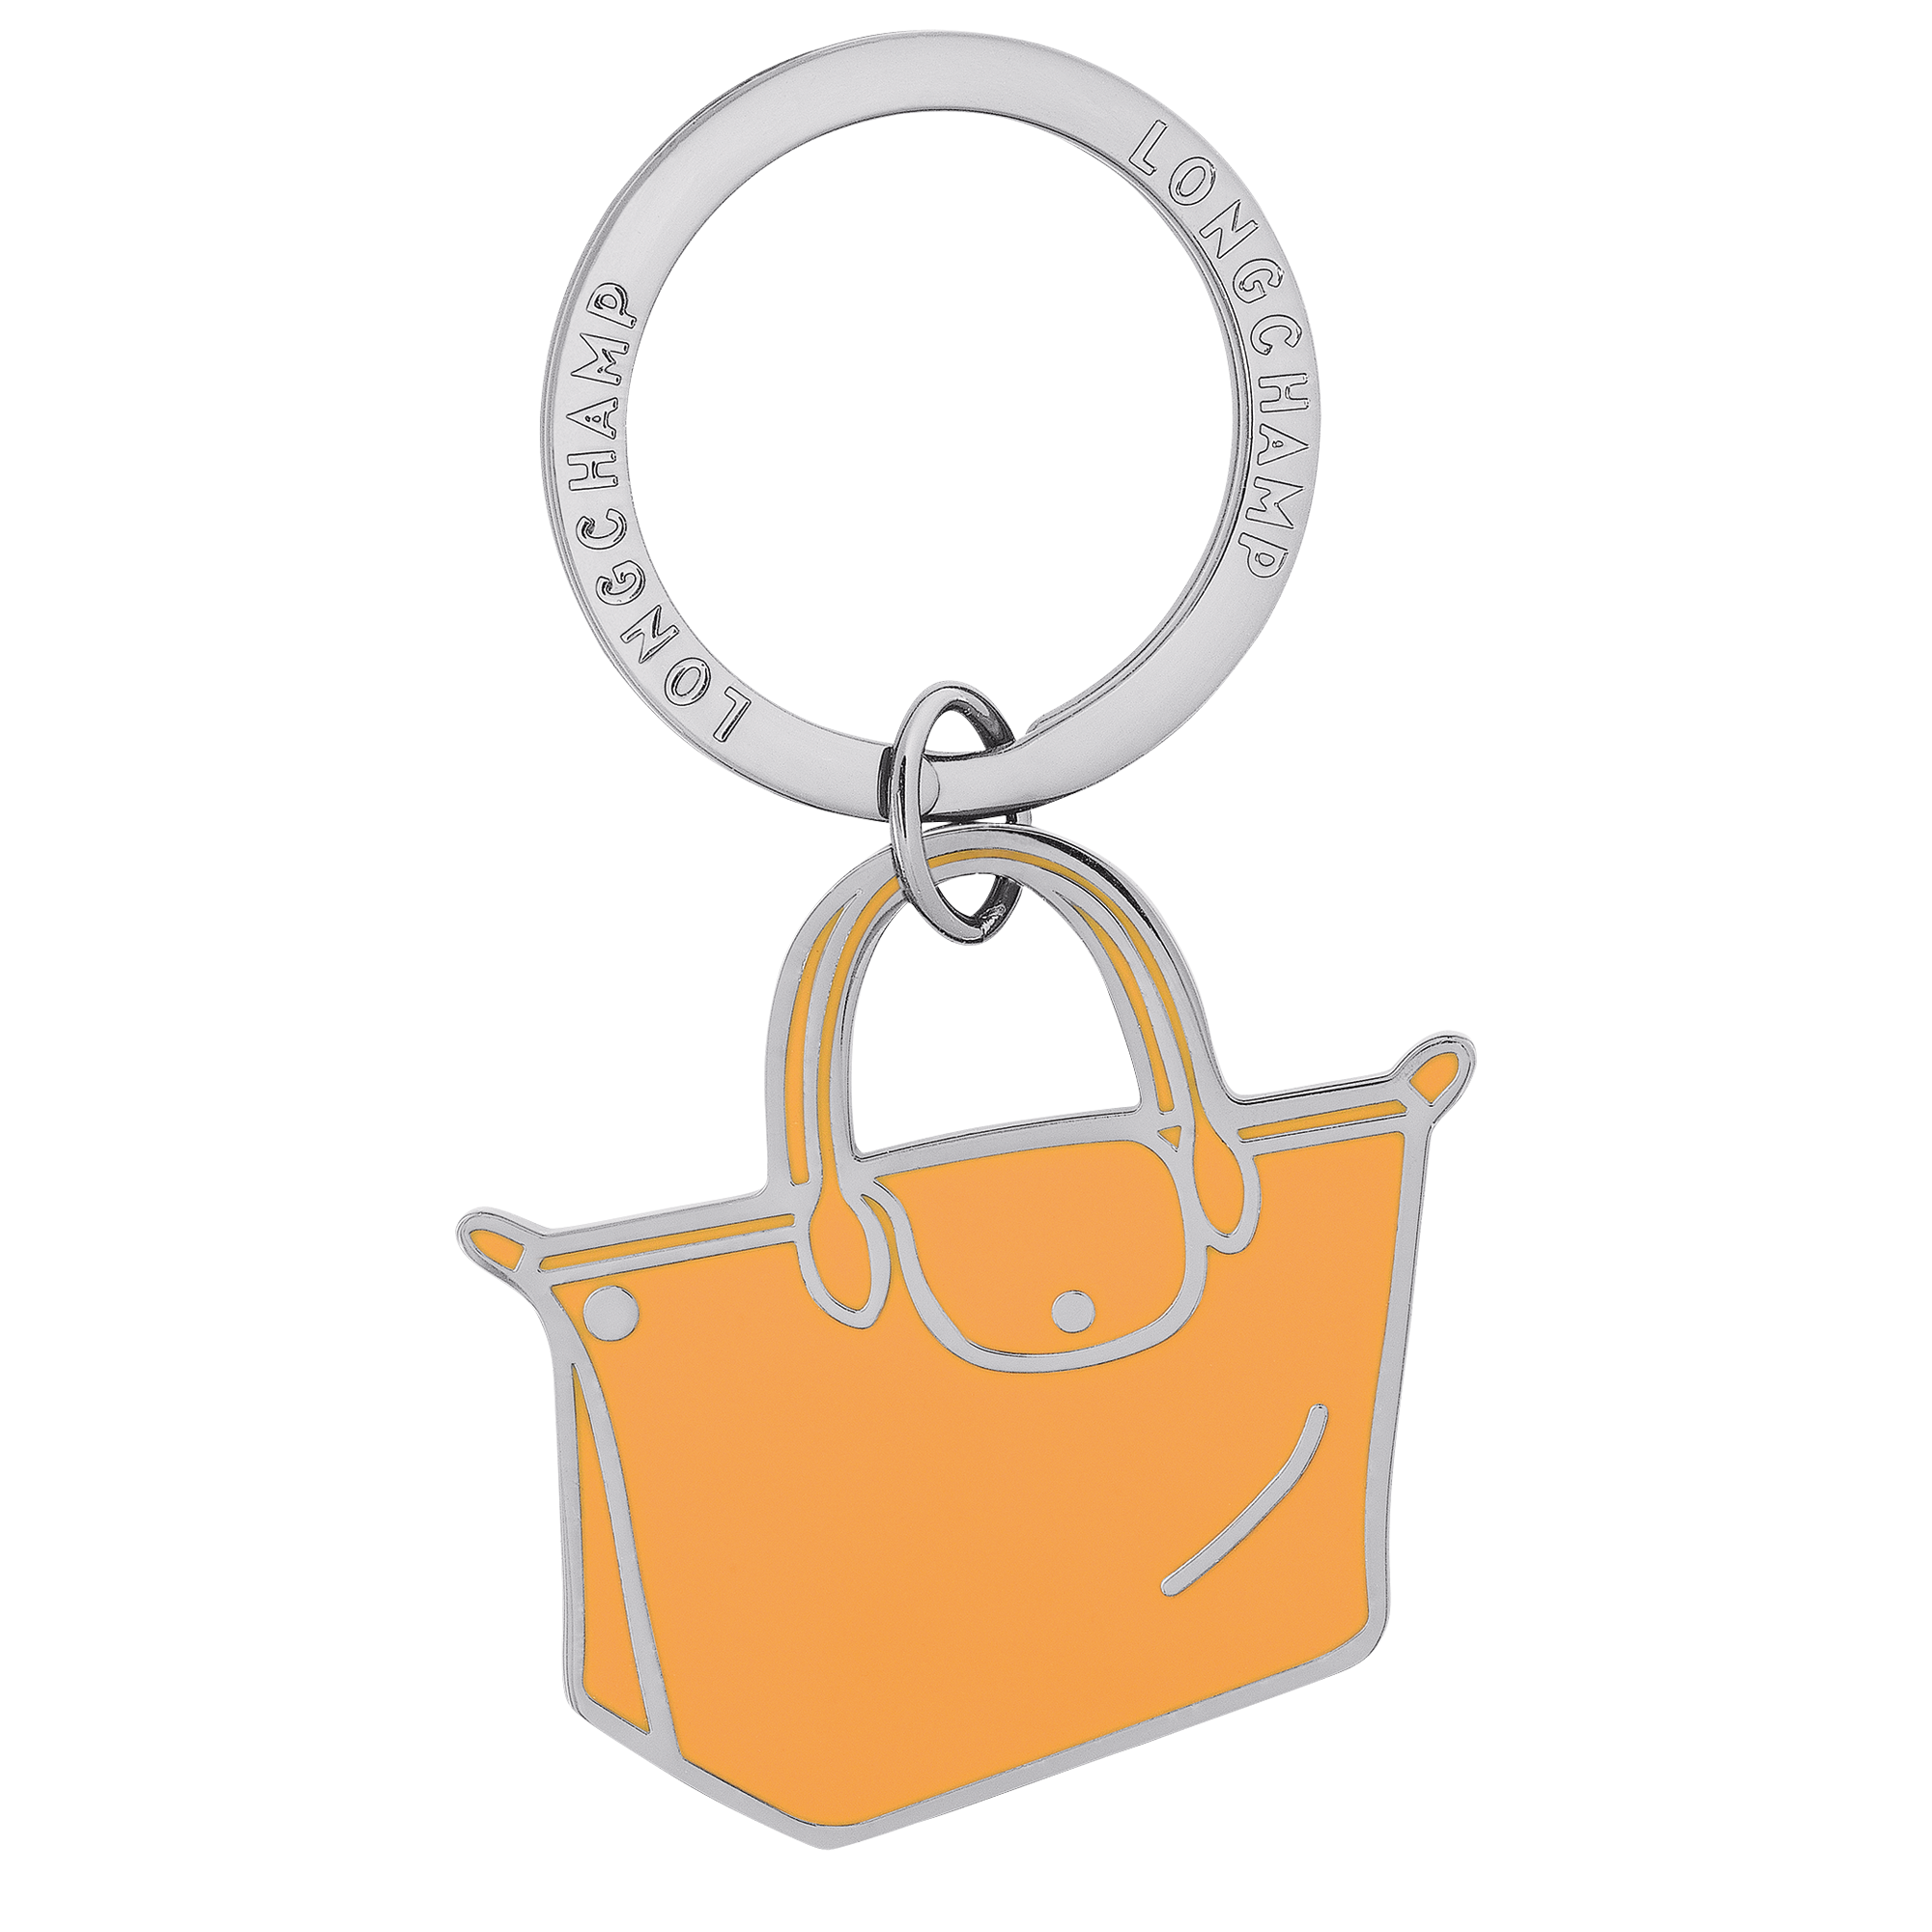 Le Pliage Key rings, Apricot